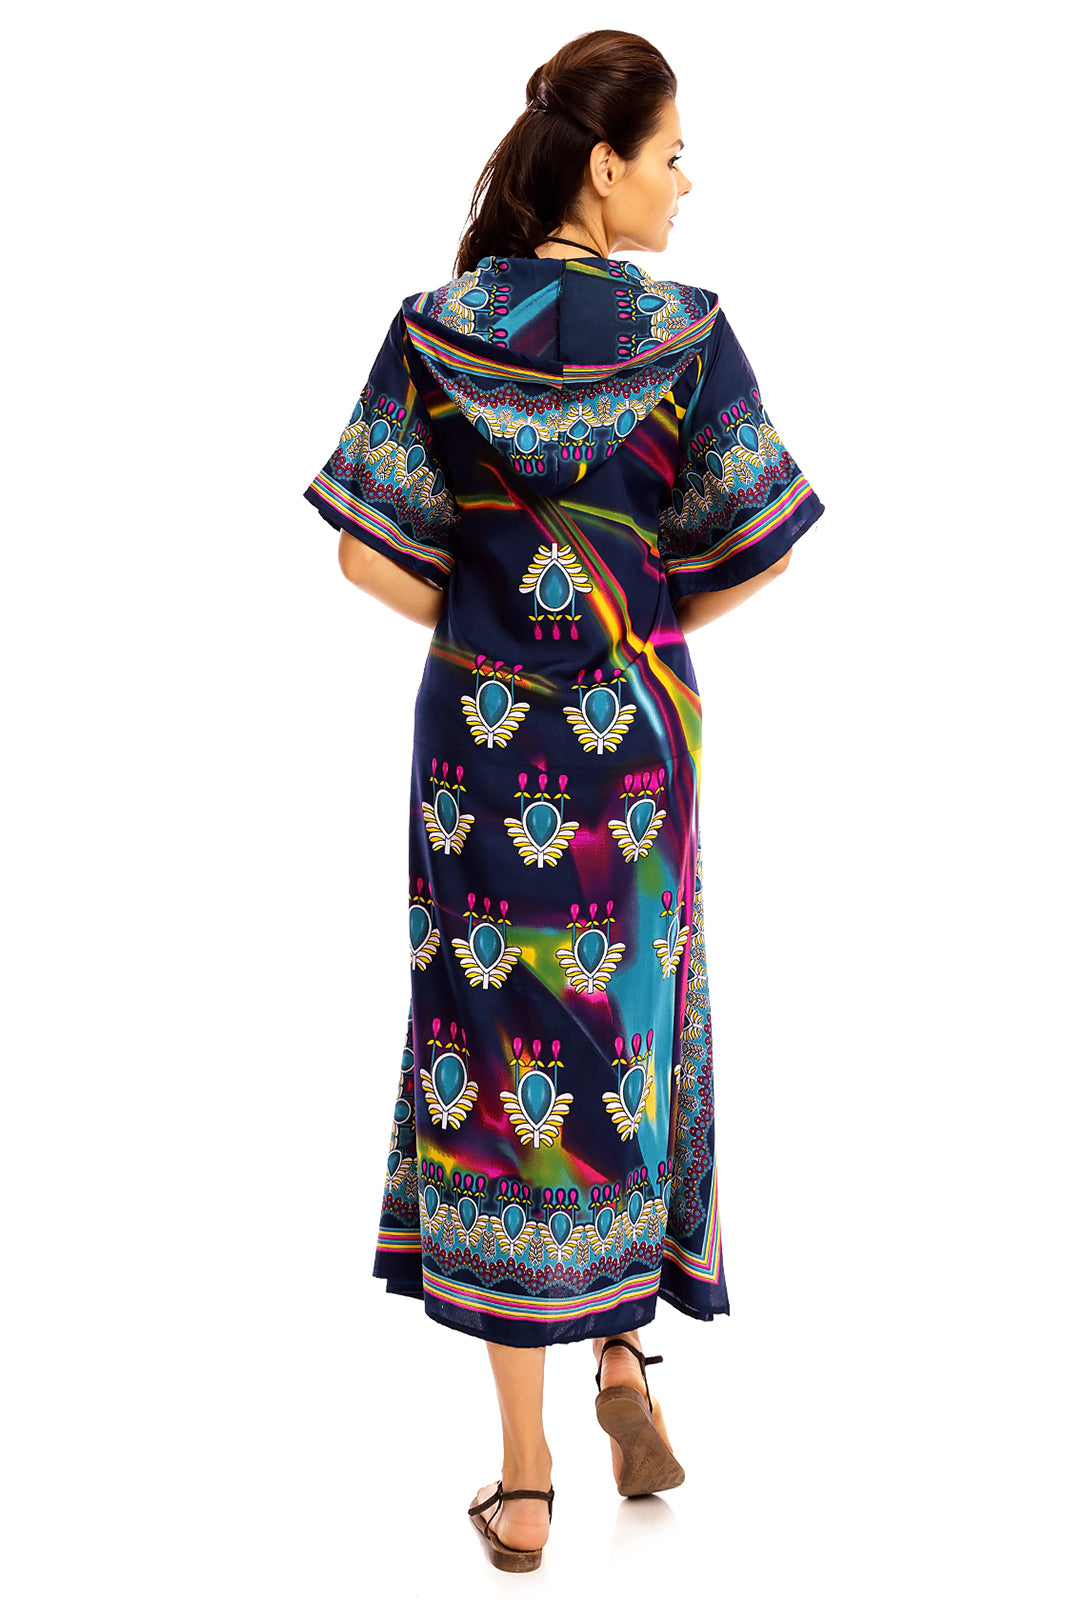 Ladies Hooded Kimono Gown Kaftan in Tribal Print  -  Blue - Pack of 12